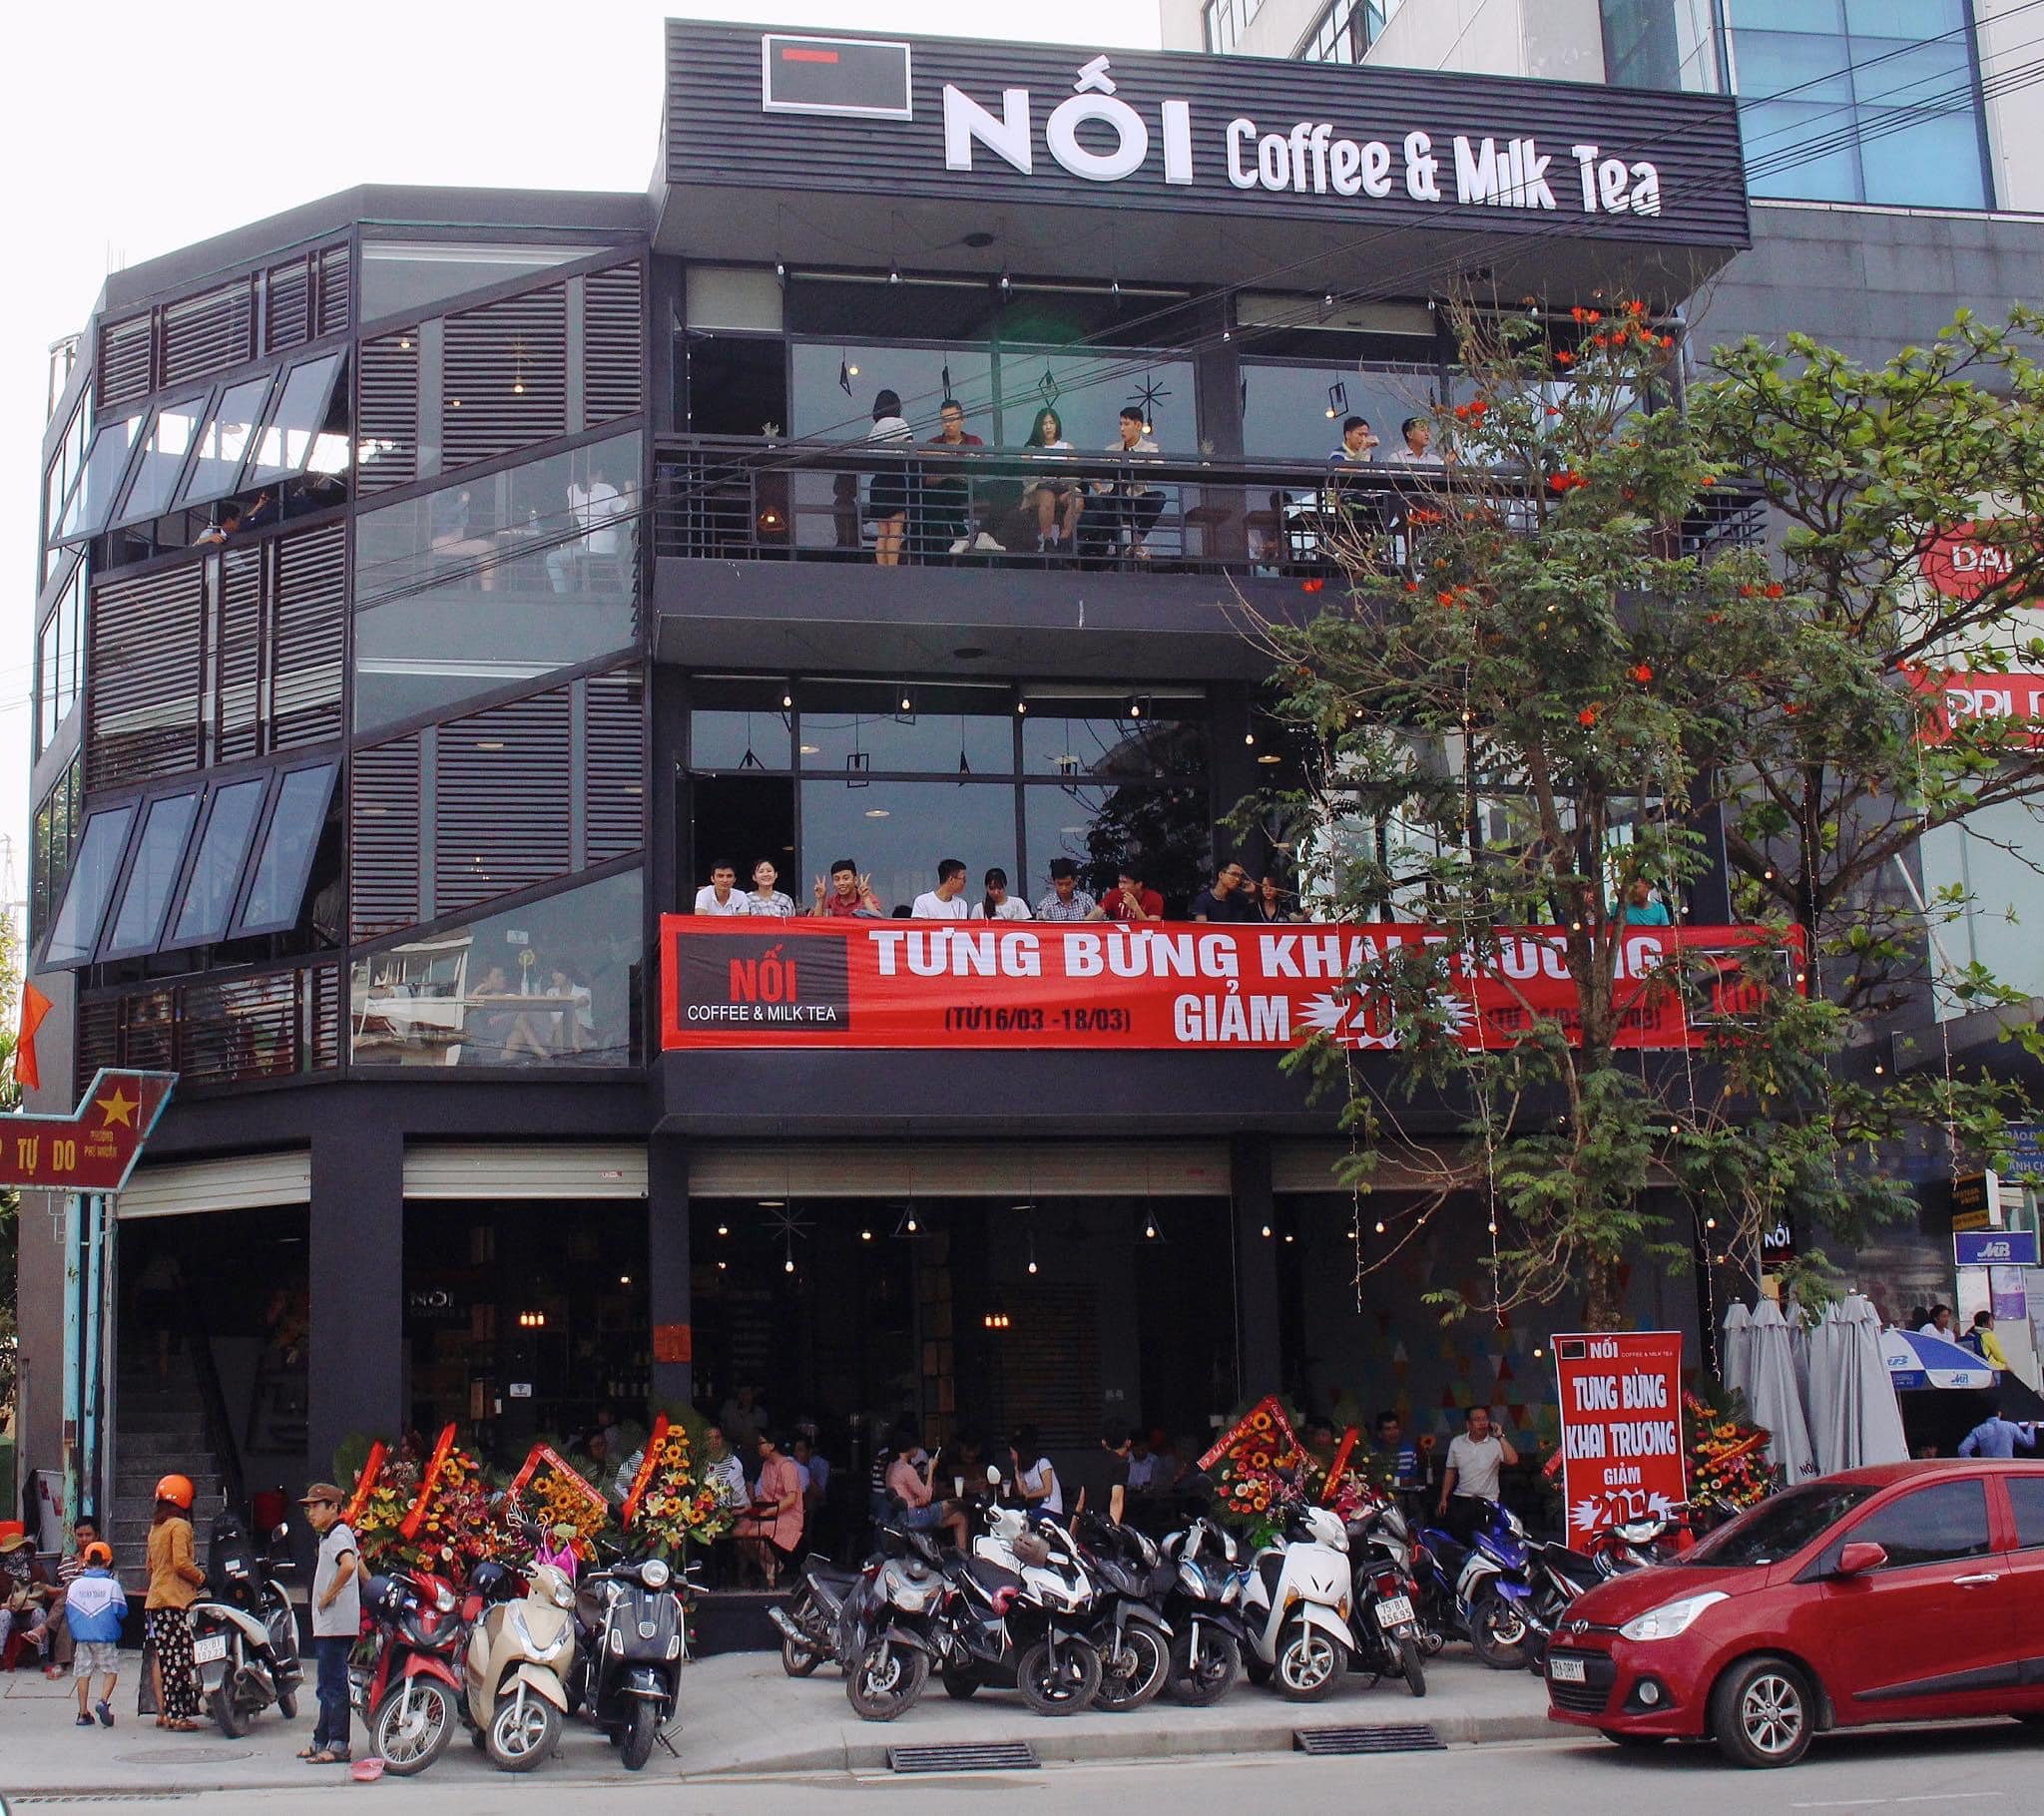 Nối Coffee&Tea - Quán cà phê phong cách cổ điển pha lẫn nét hiện đại ngay trung tâm thành phố Huế